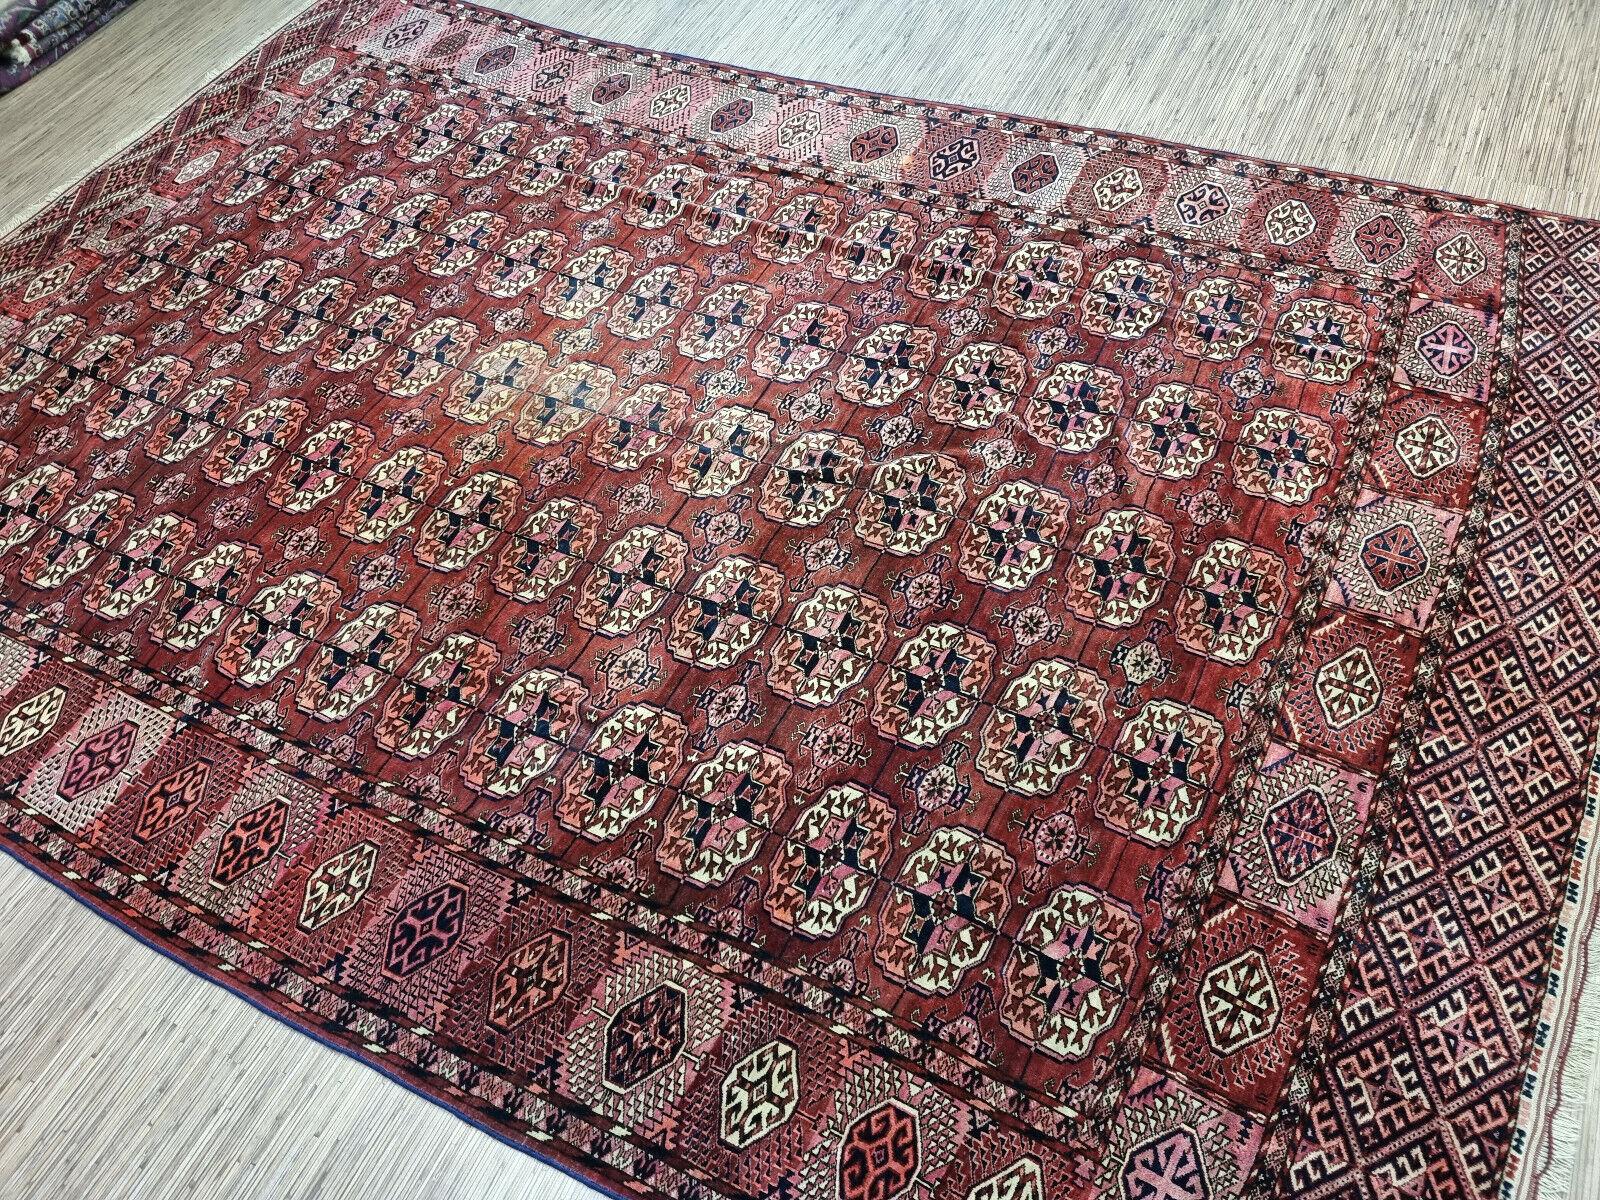 Lassen Sie sich mit diesem handgefertigten antiken turkmenischen Tekke-Teppich von der Geschichte und Kultur Turkmenistans inspirieren. Dieser atemberaubende Teppich misst 7,5' x 11,6' (230cm x 355cm) und ist damit eine großartige Ergänzung für